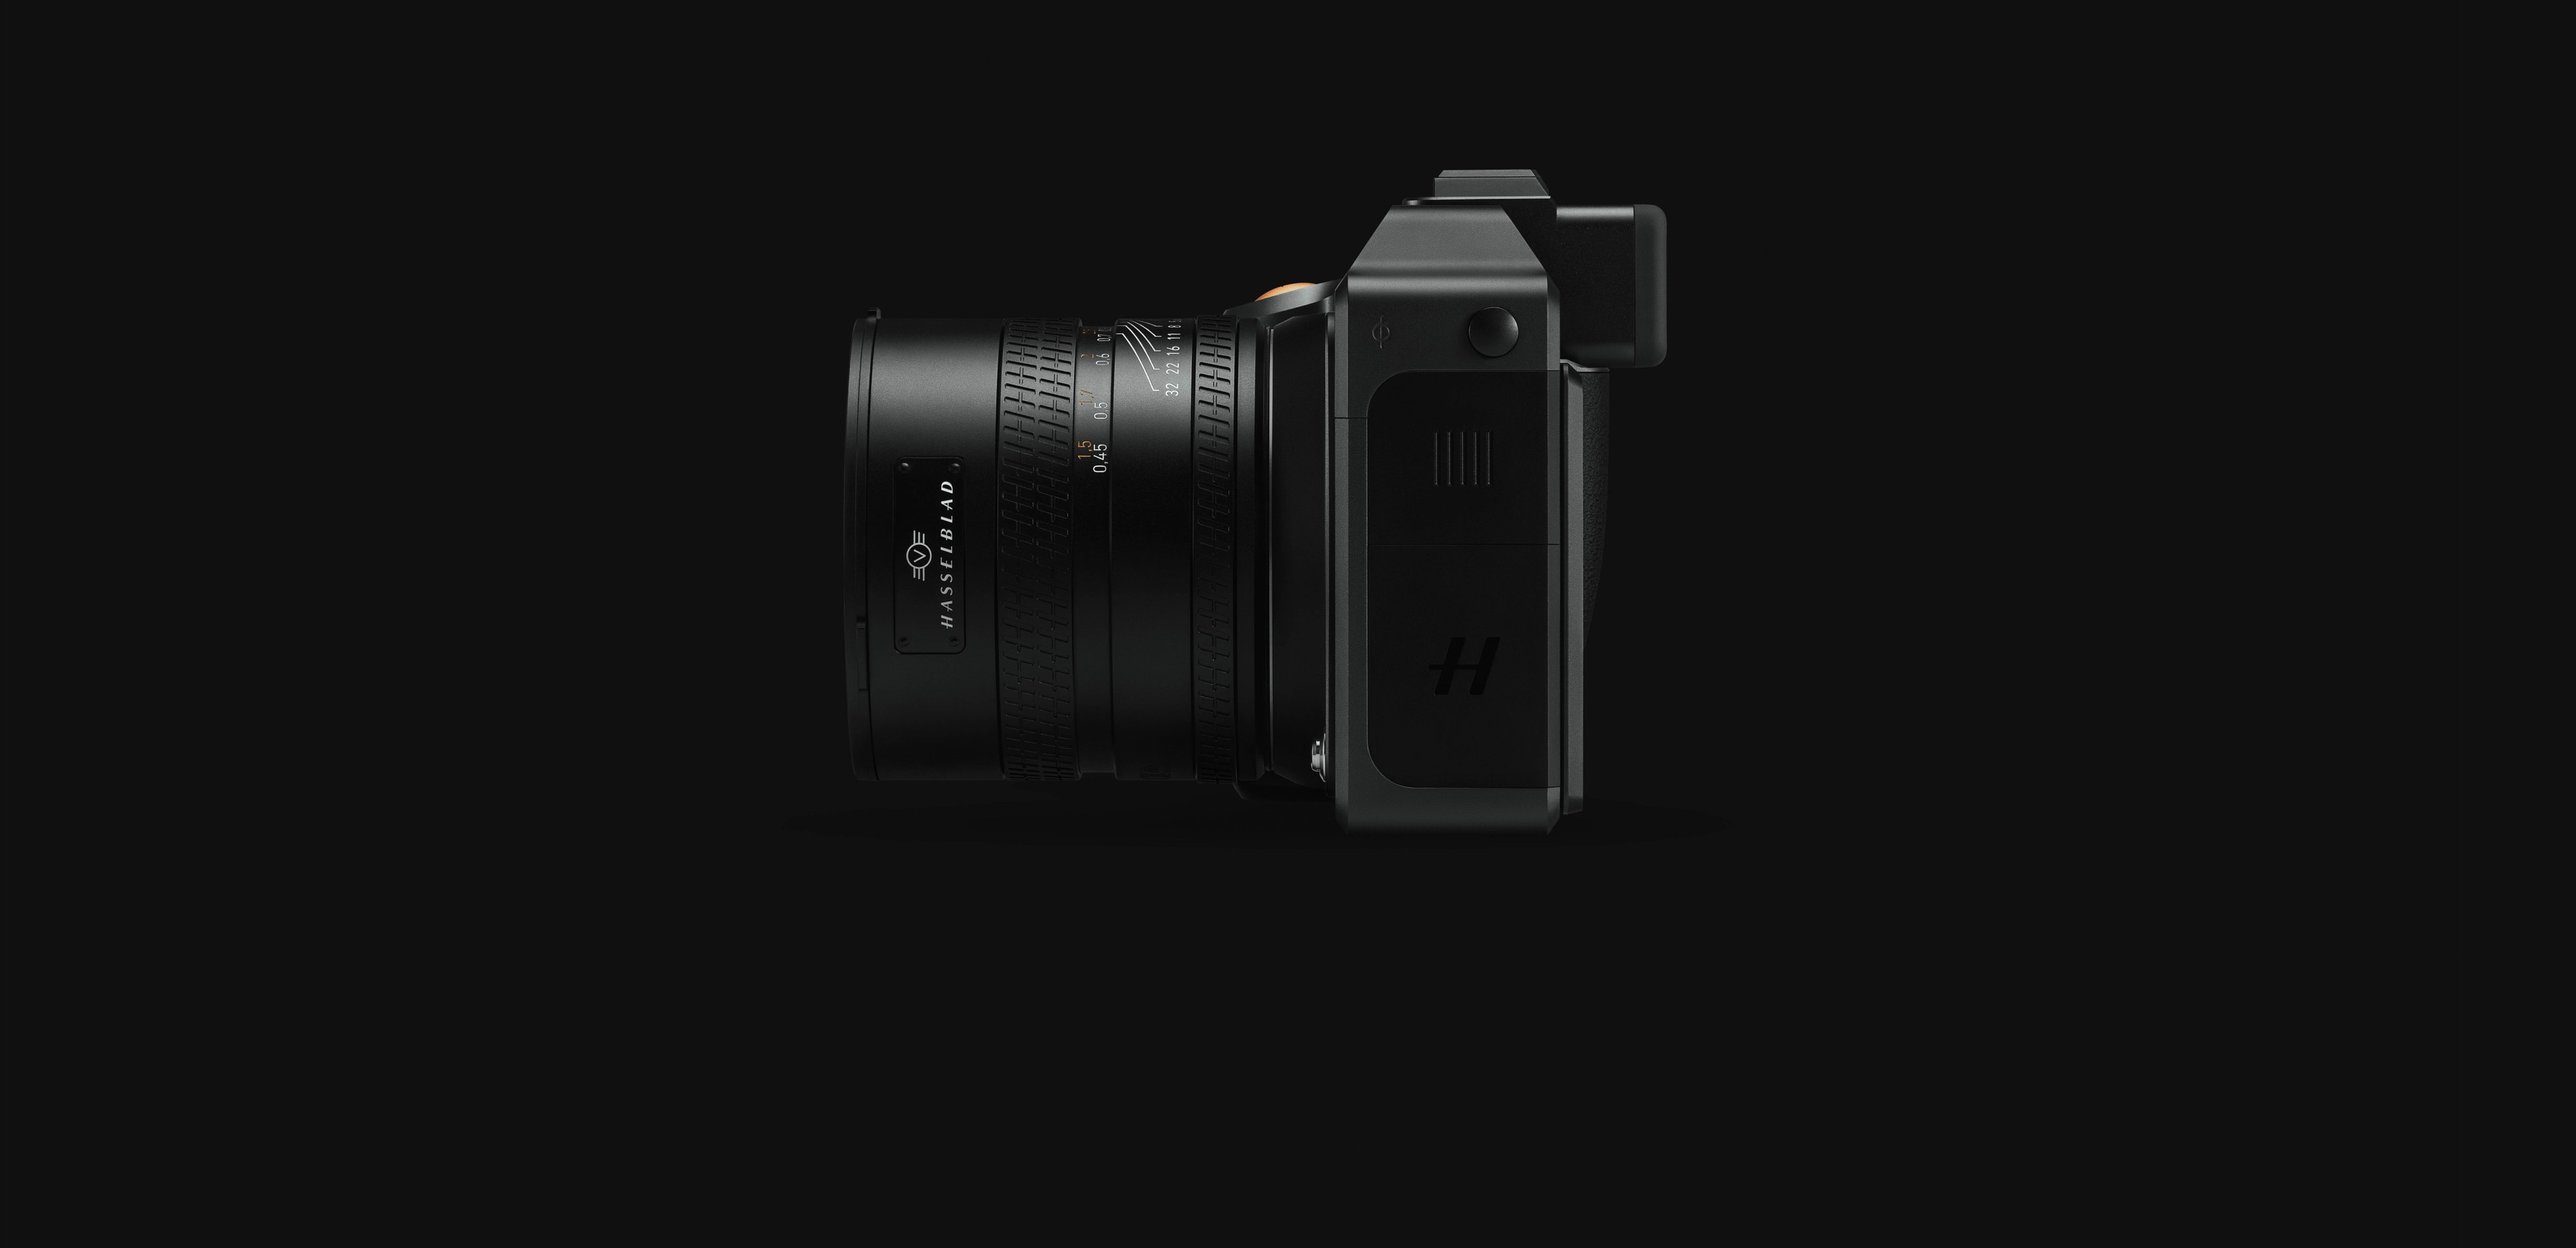 핫셀블라드 중형 포맷 디지털 미러리스 카메라 X2D 100C